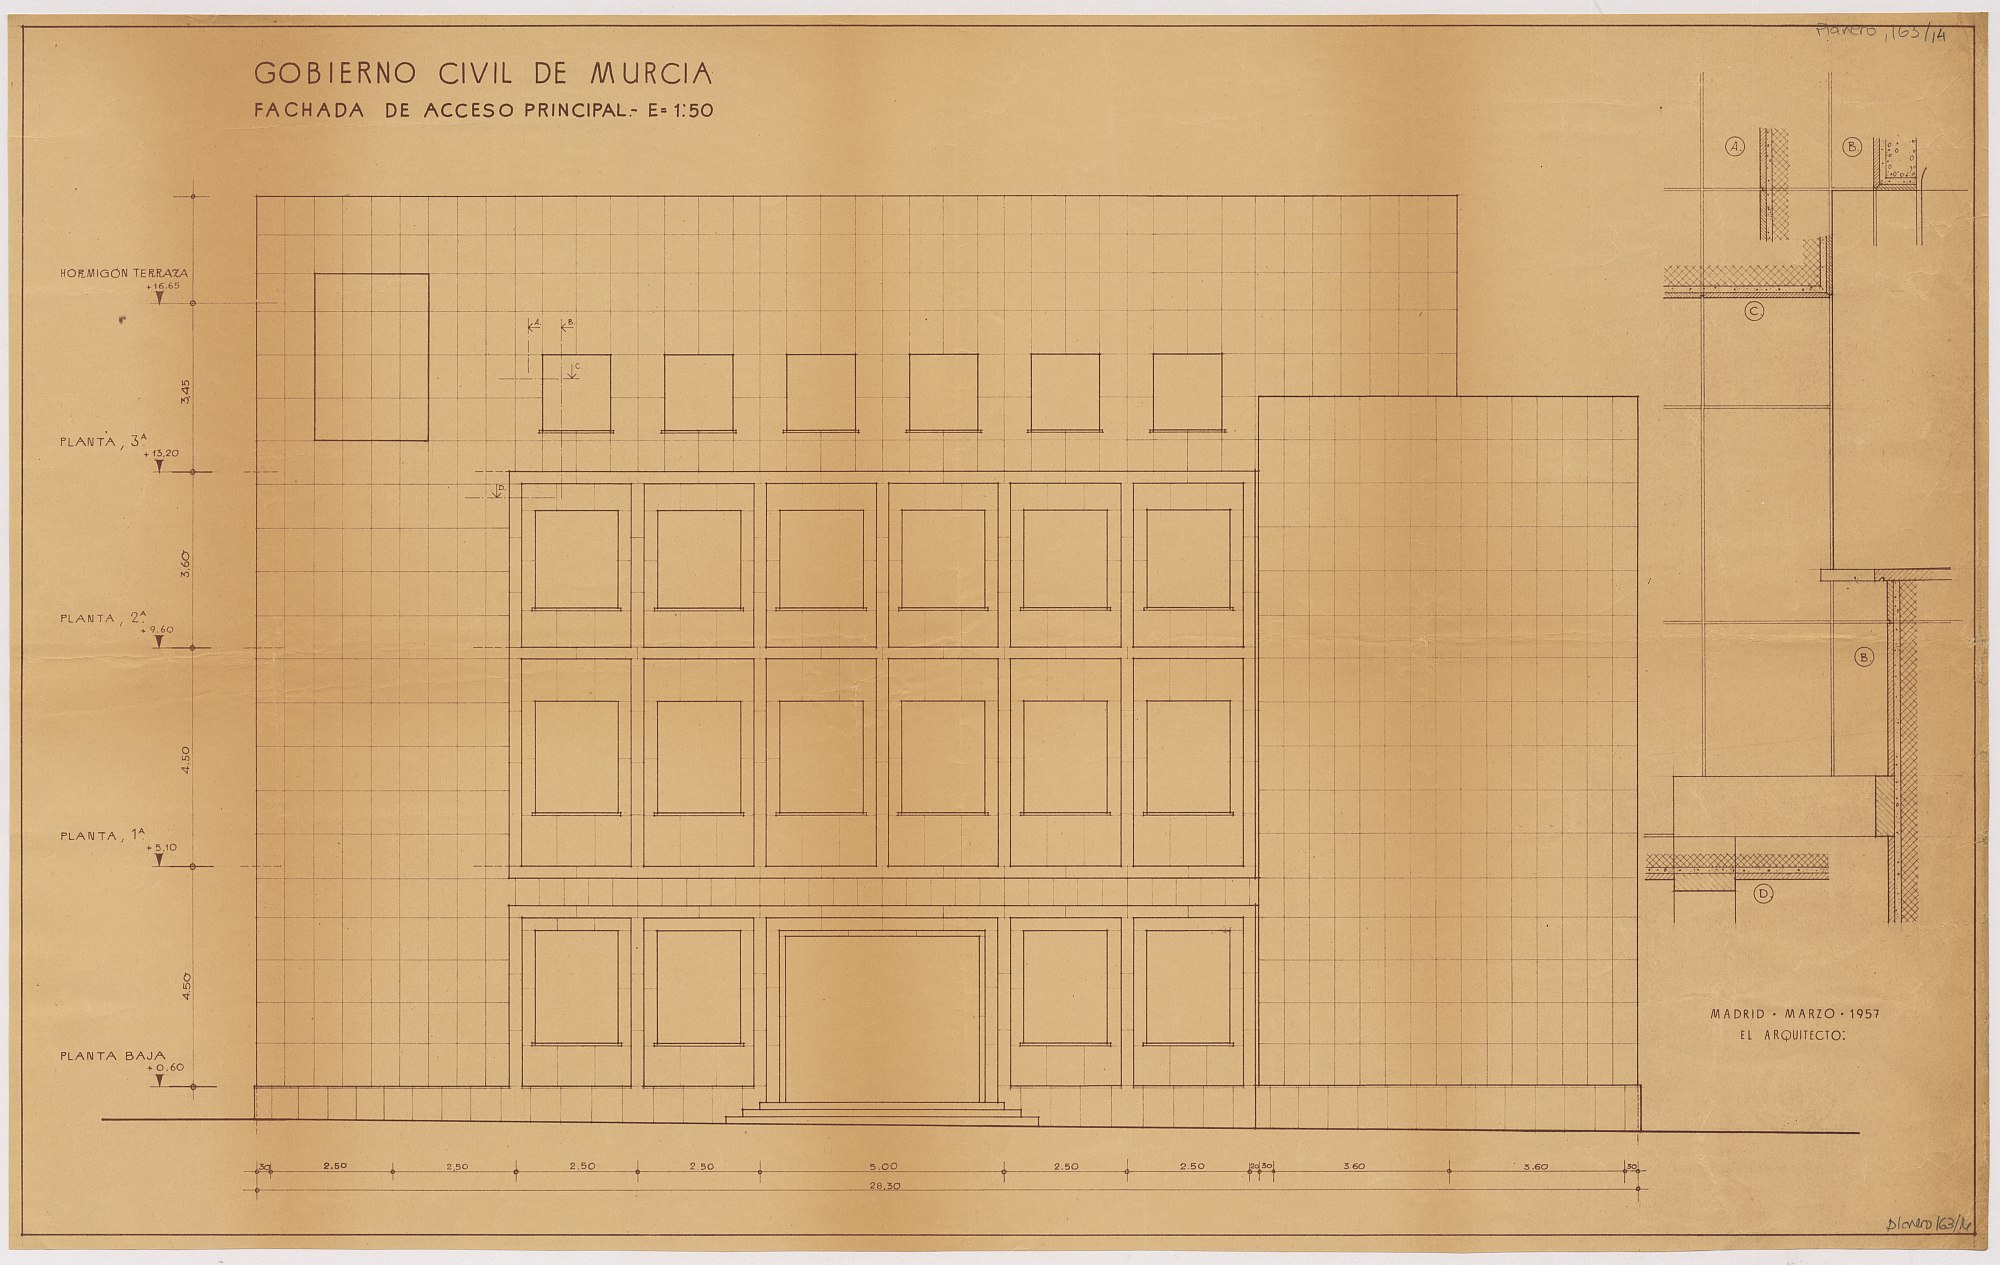 Plano de la fachada de acceso principal del edificio del Gobierno Civil de Murcia.